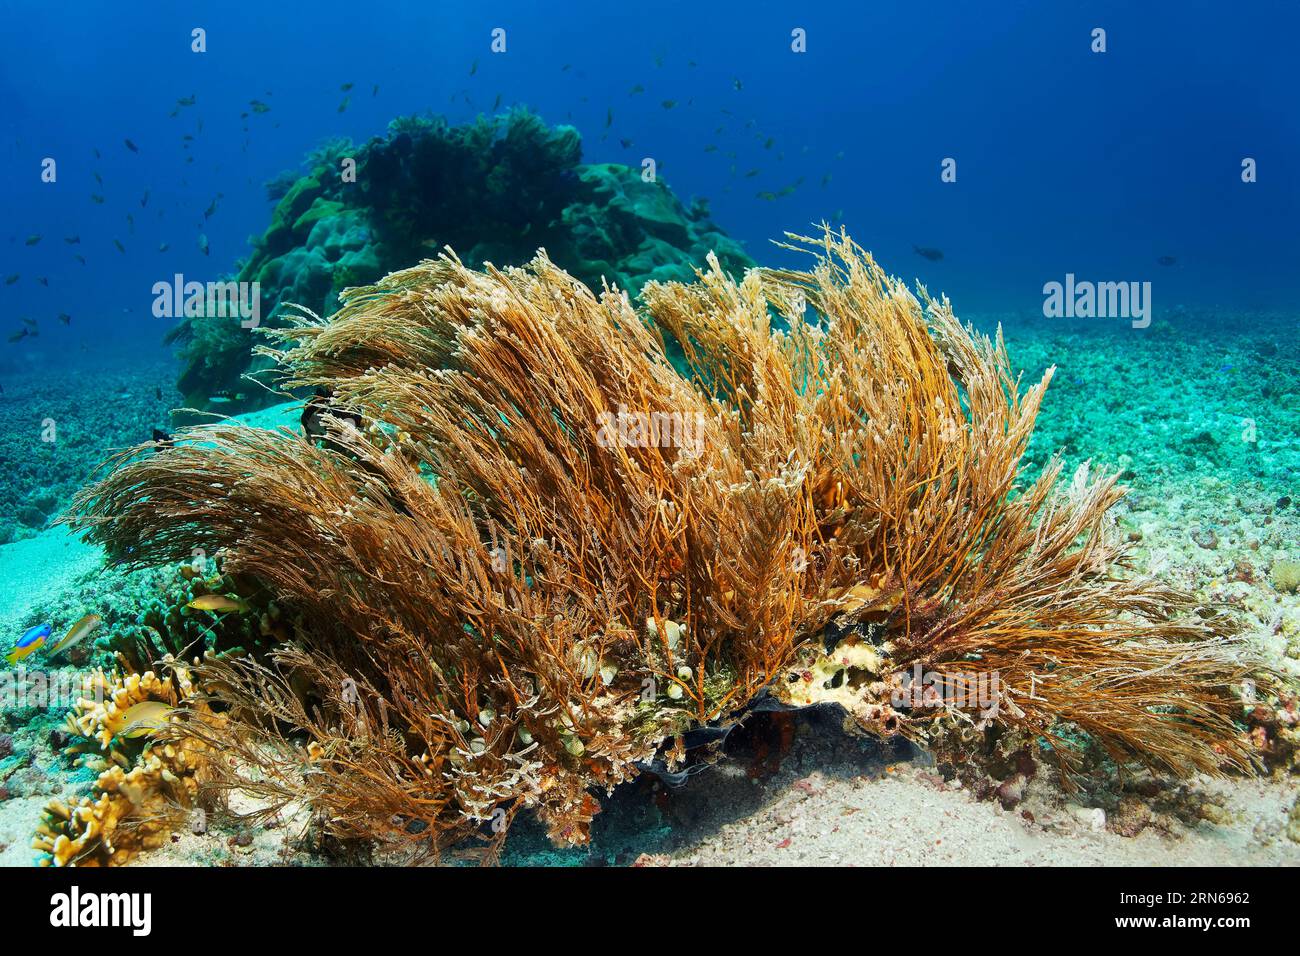 Bastoni idrozoani (Hydrozoa) fortemente cnidariani, su fondo sabbioso, grande Barriera Corallina, sito patrimonio dell'umanità dell'UNESCO, Mar dei Coralli, Oceano Pacifico, Foto Stock